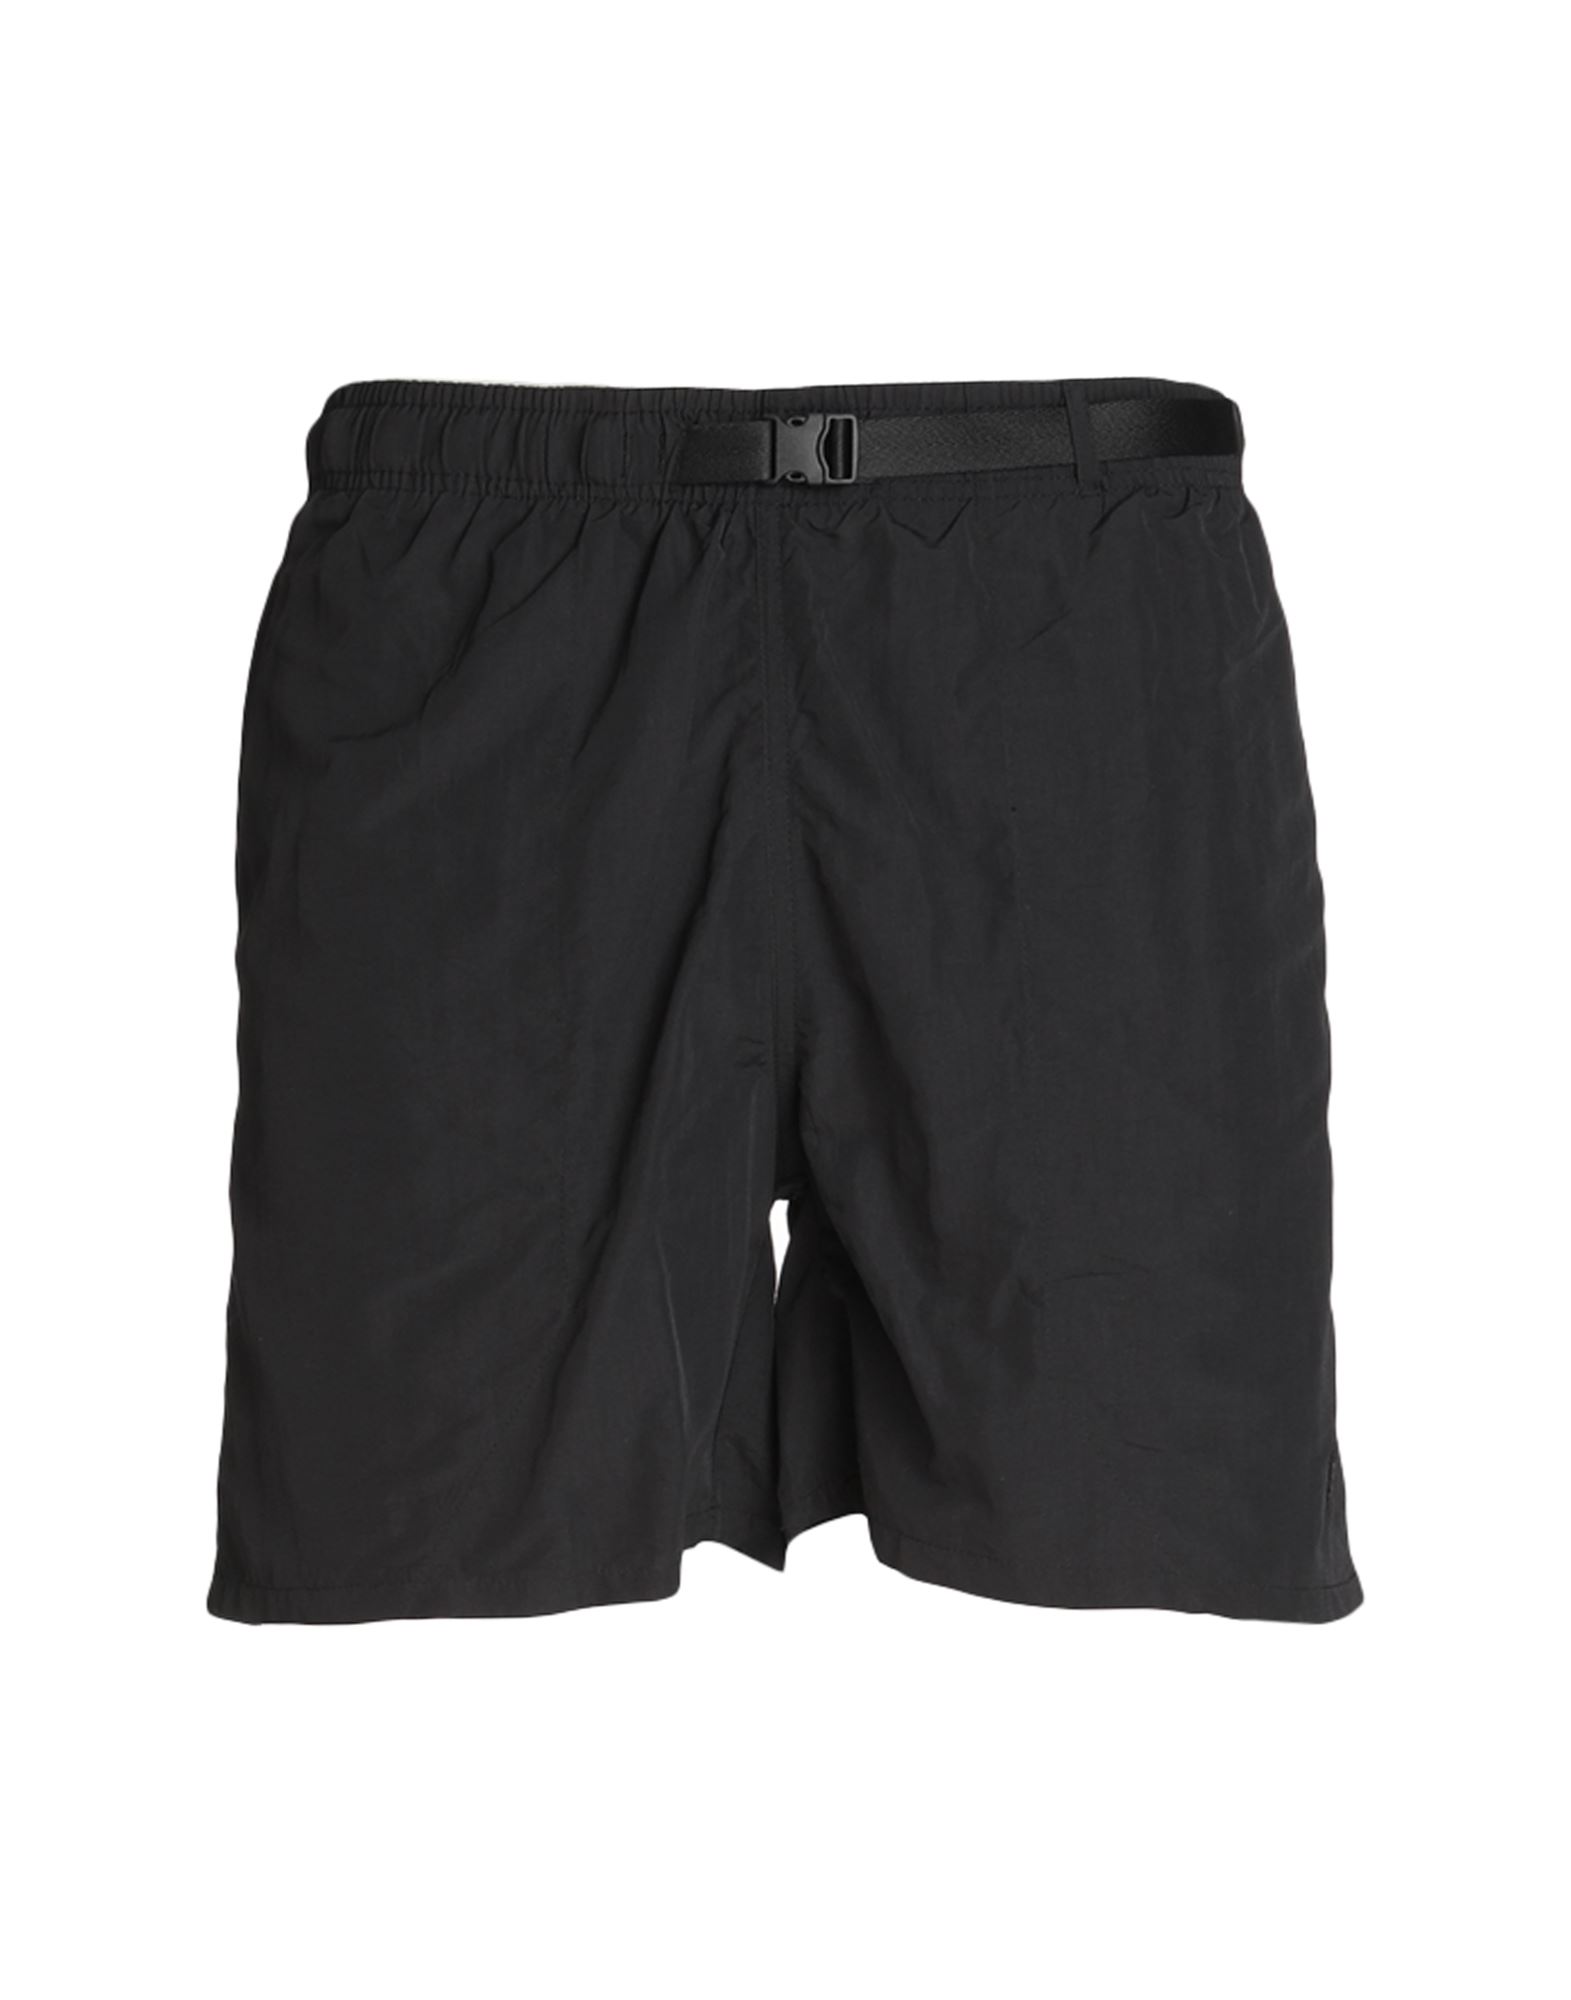 MARKET Shorts & Bermudashorts Herren Schwarz von MARKET